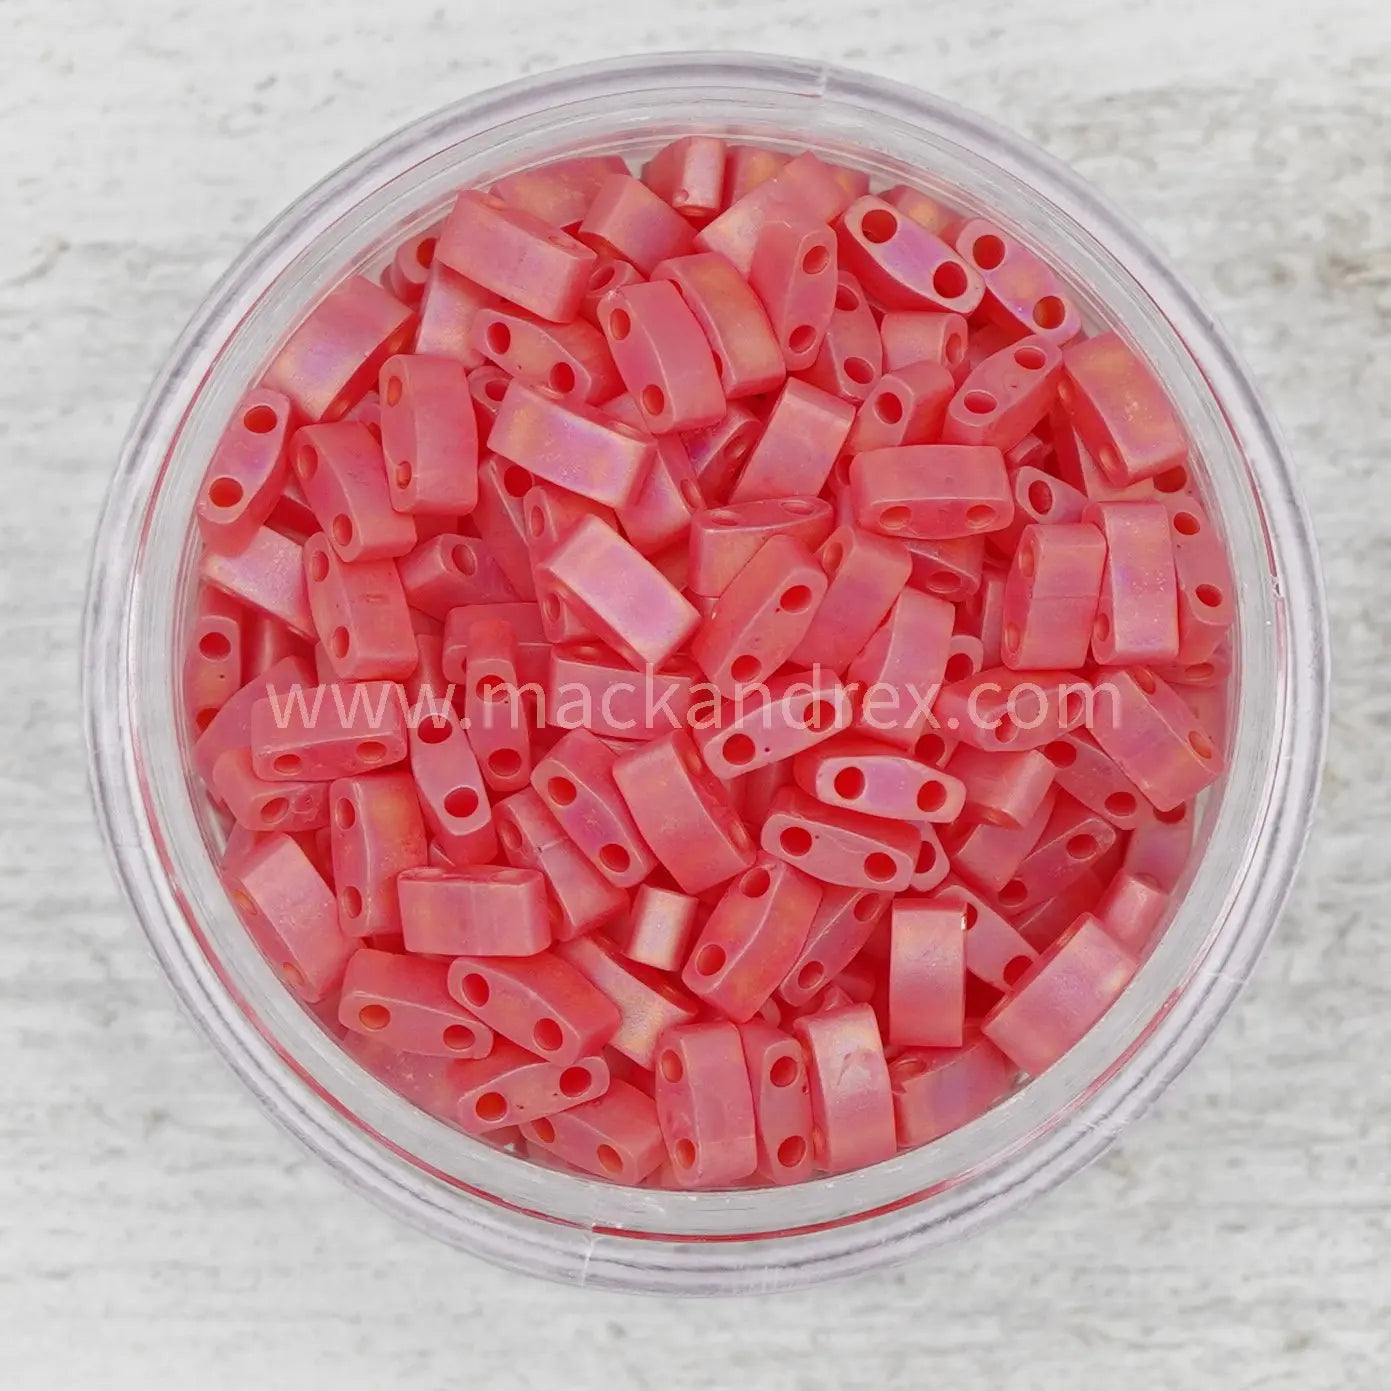 0140FR Tila Beads - Red Transparent Matte Rainbow - Mack & Rex